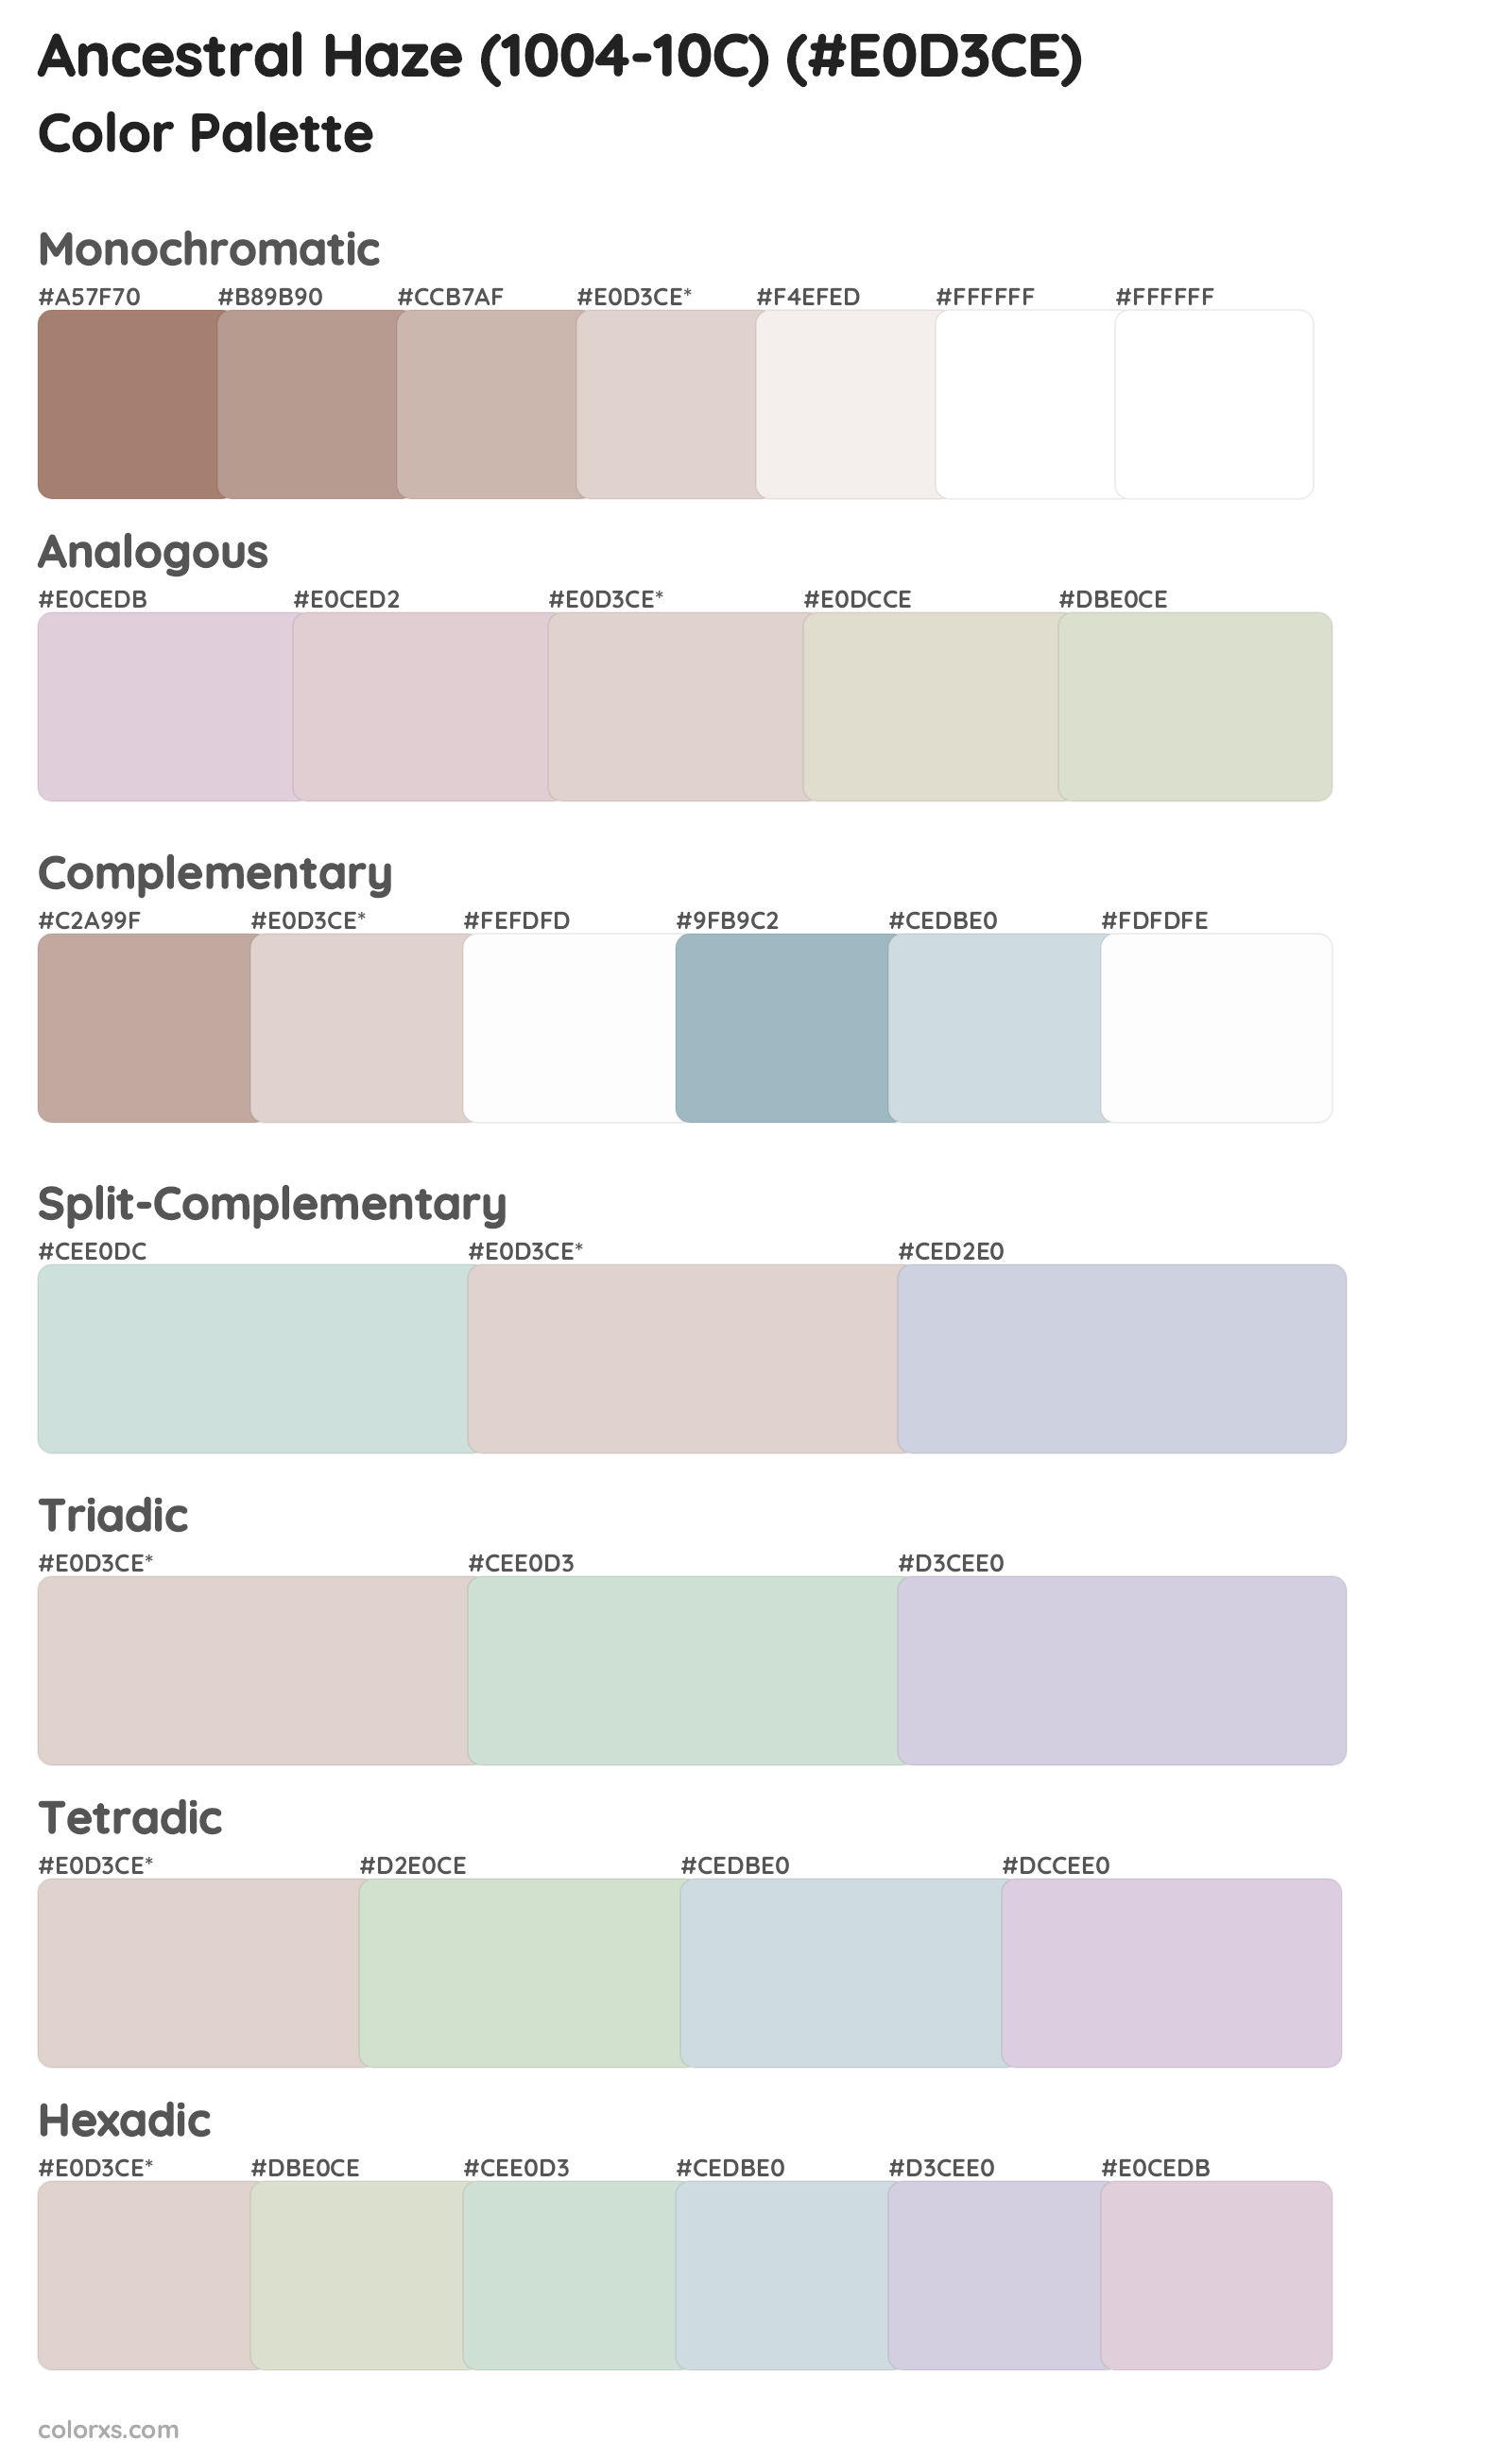 Ancestral Haze (1004-10C) Color Scheme Palettes